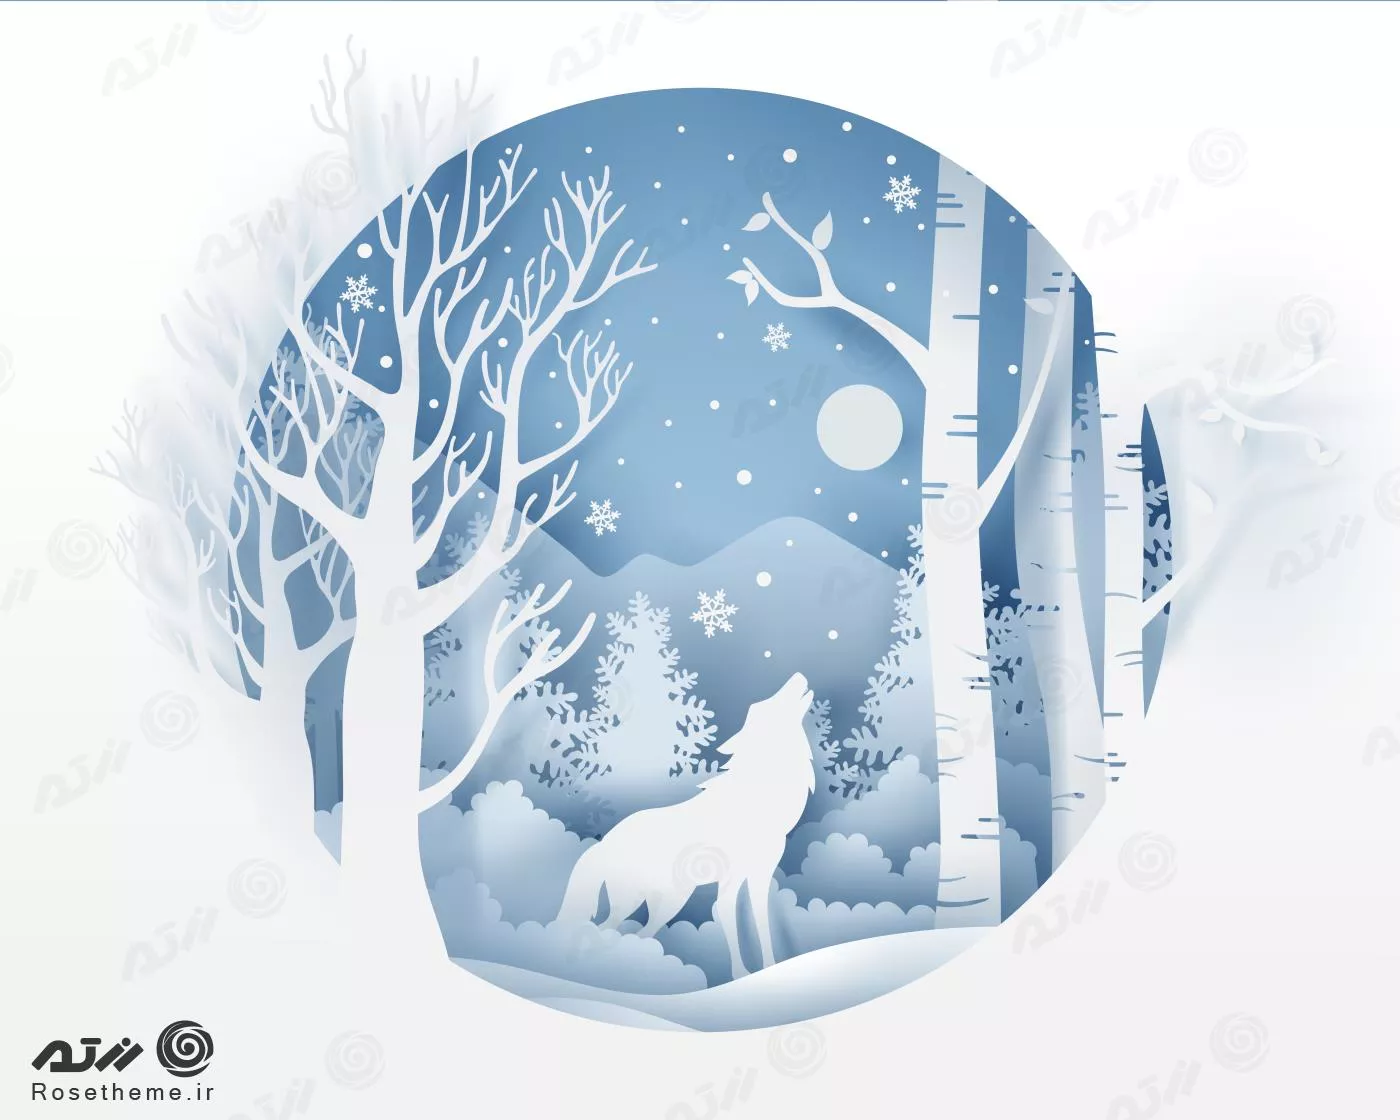 وکتور EPS لایه باز از زمستان و گرگی در حال زوزه کشیدن و دانه های برف و درختان کاج  22284